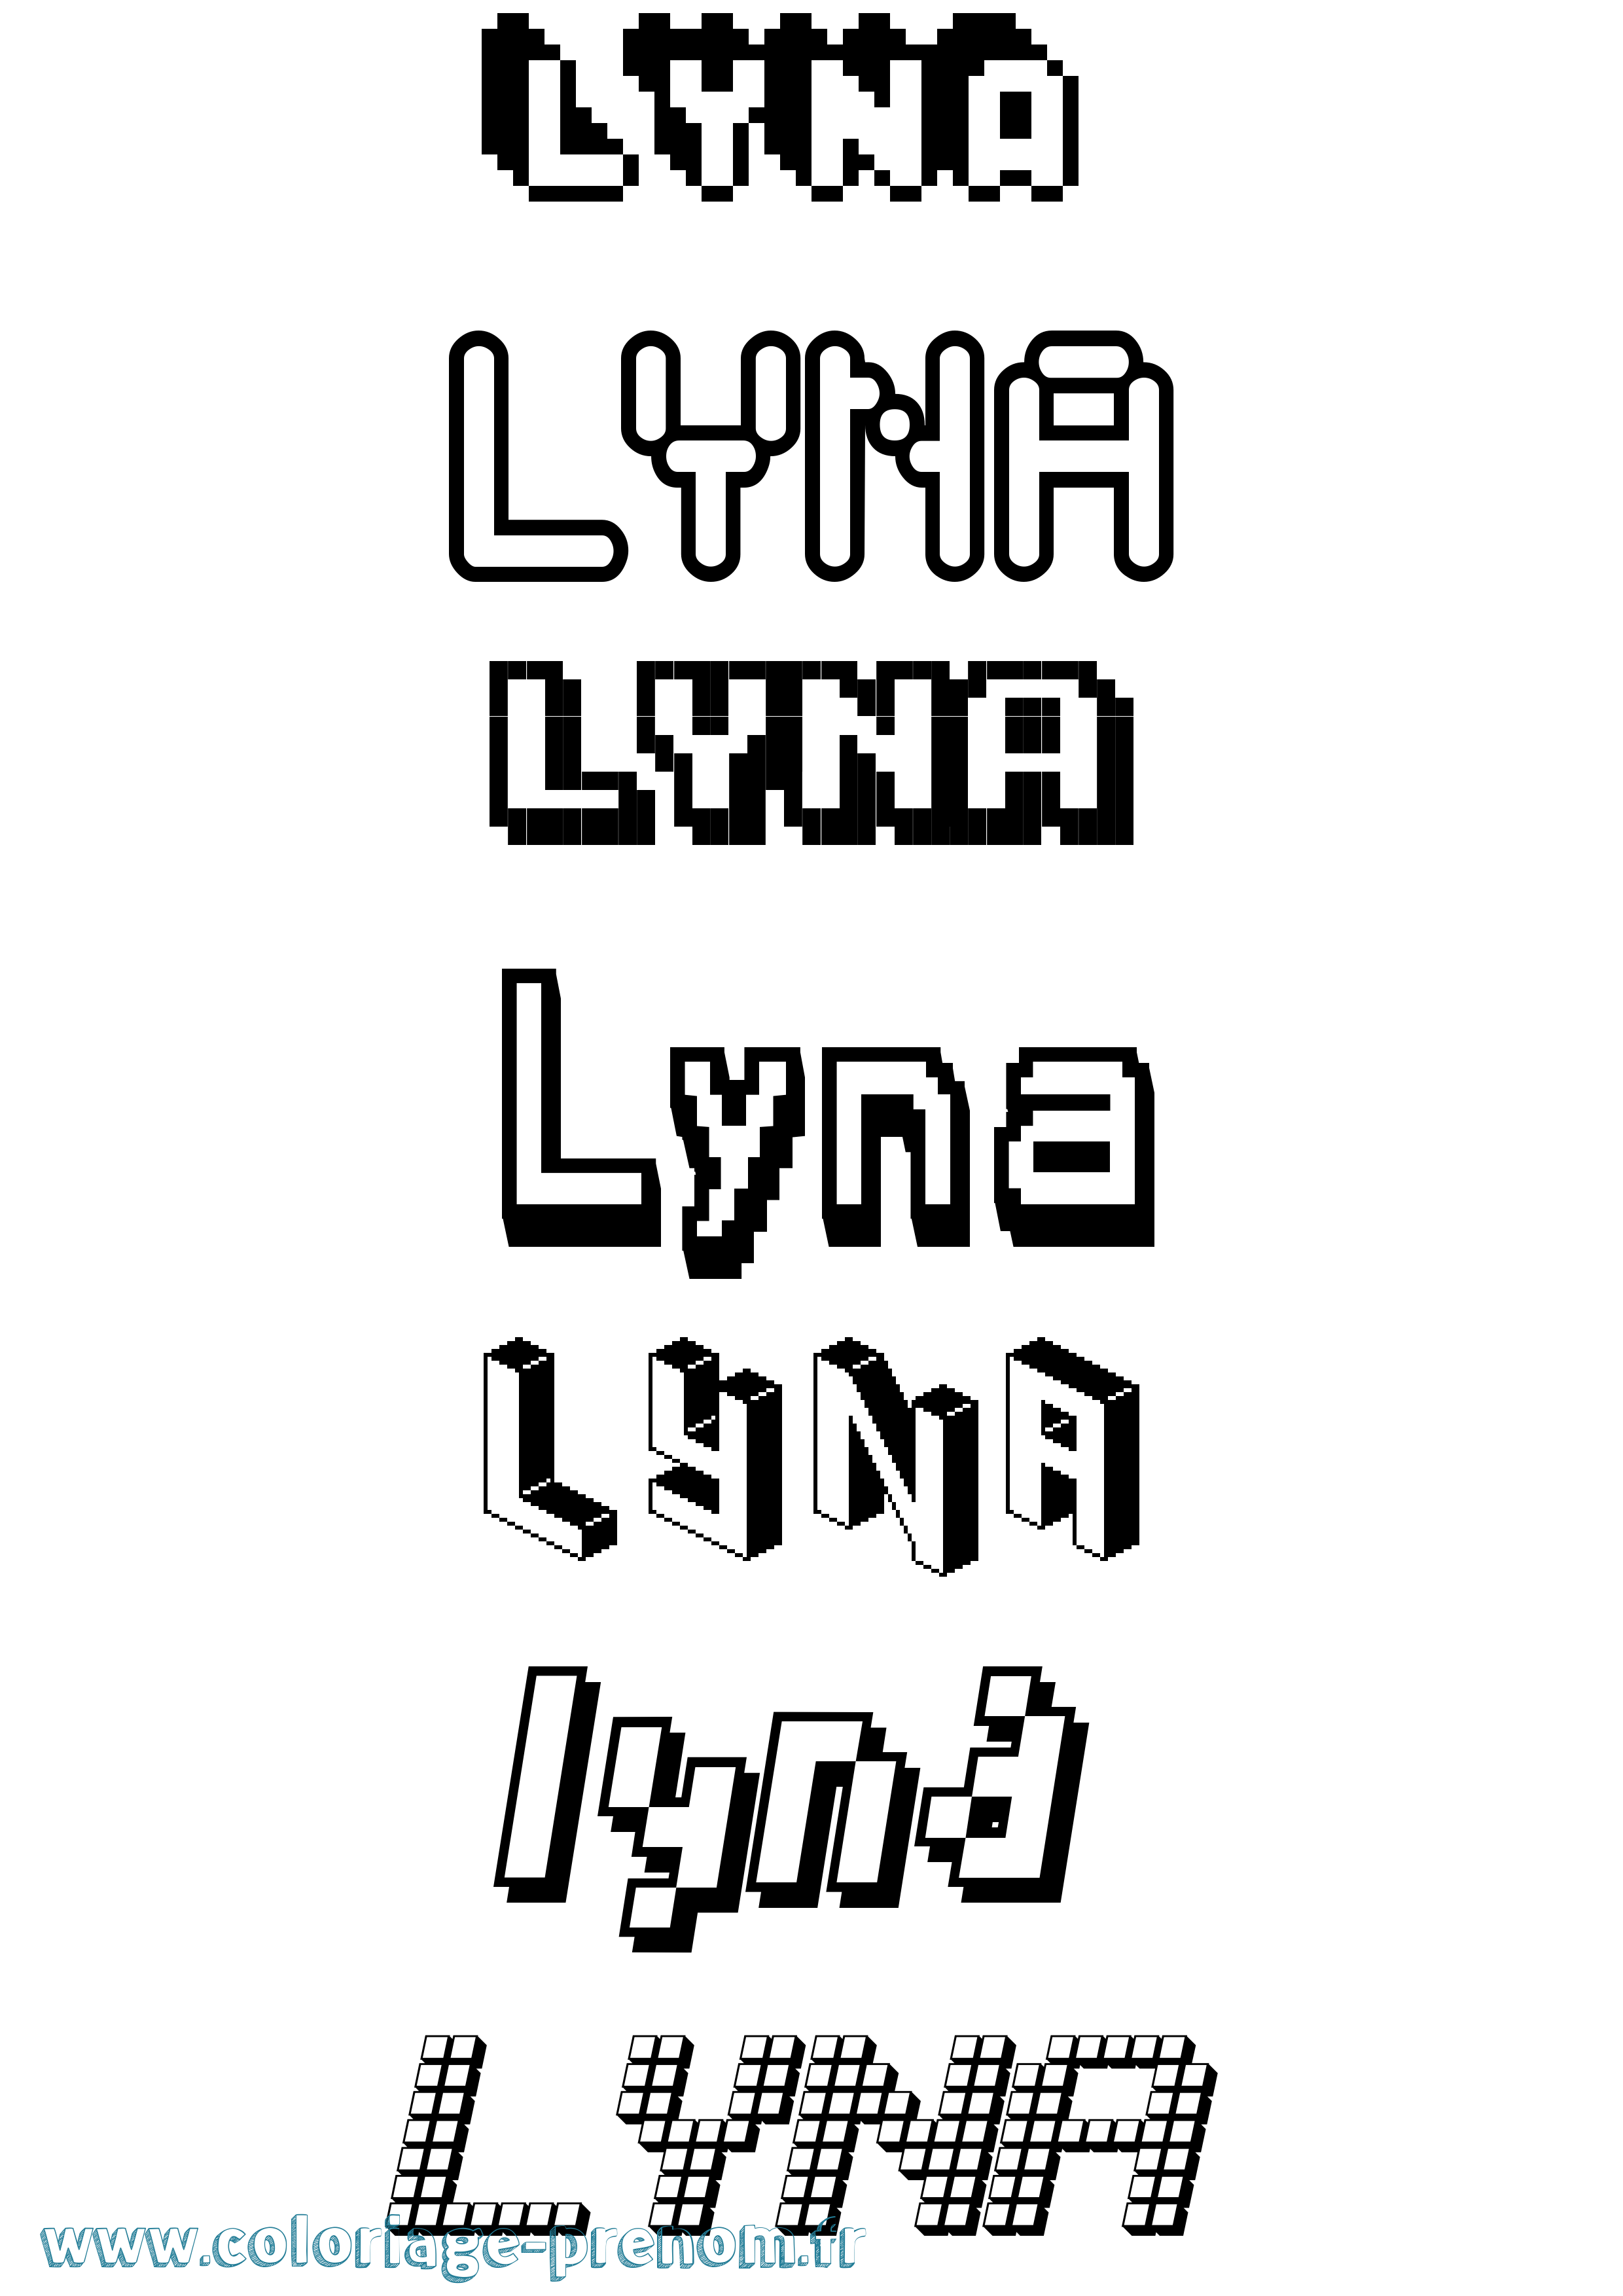 Coloriage prénom Lyna